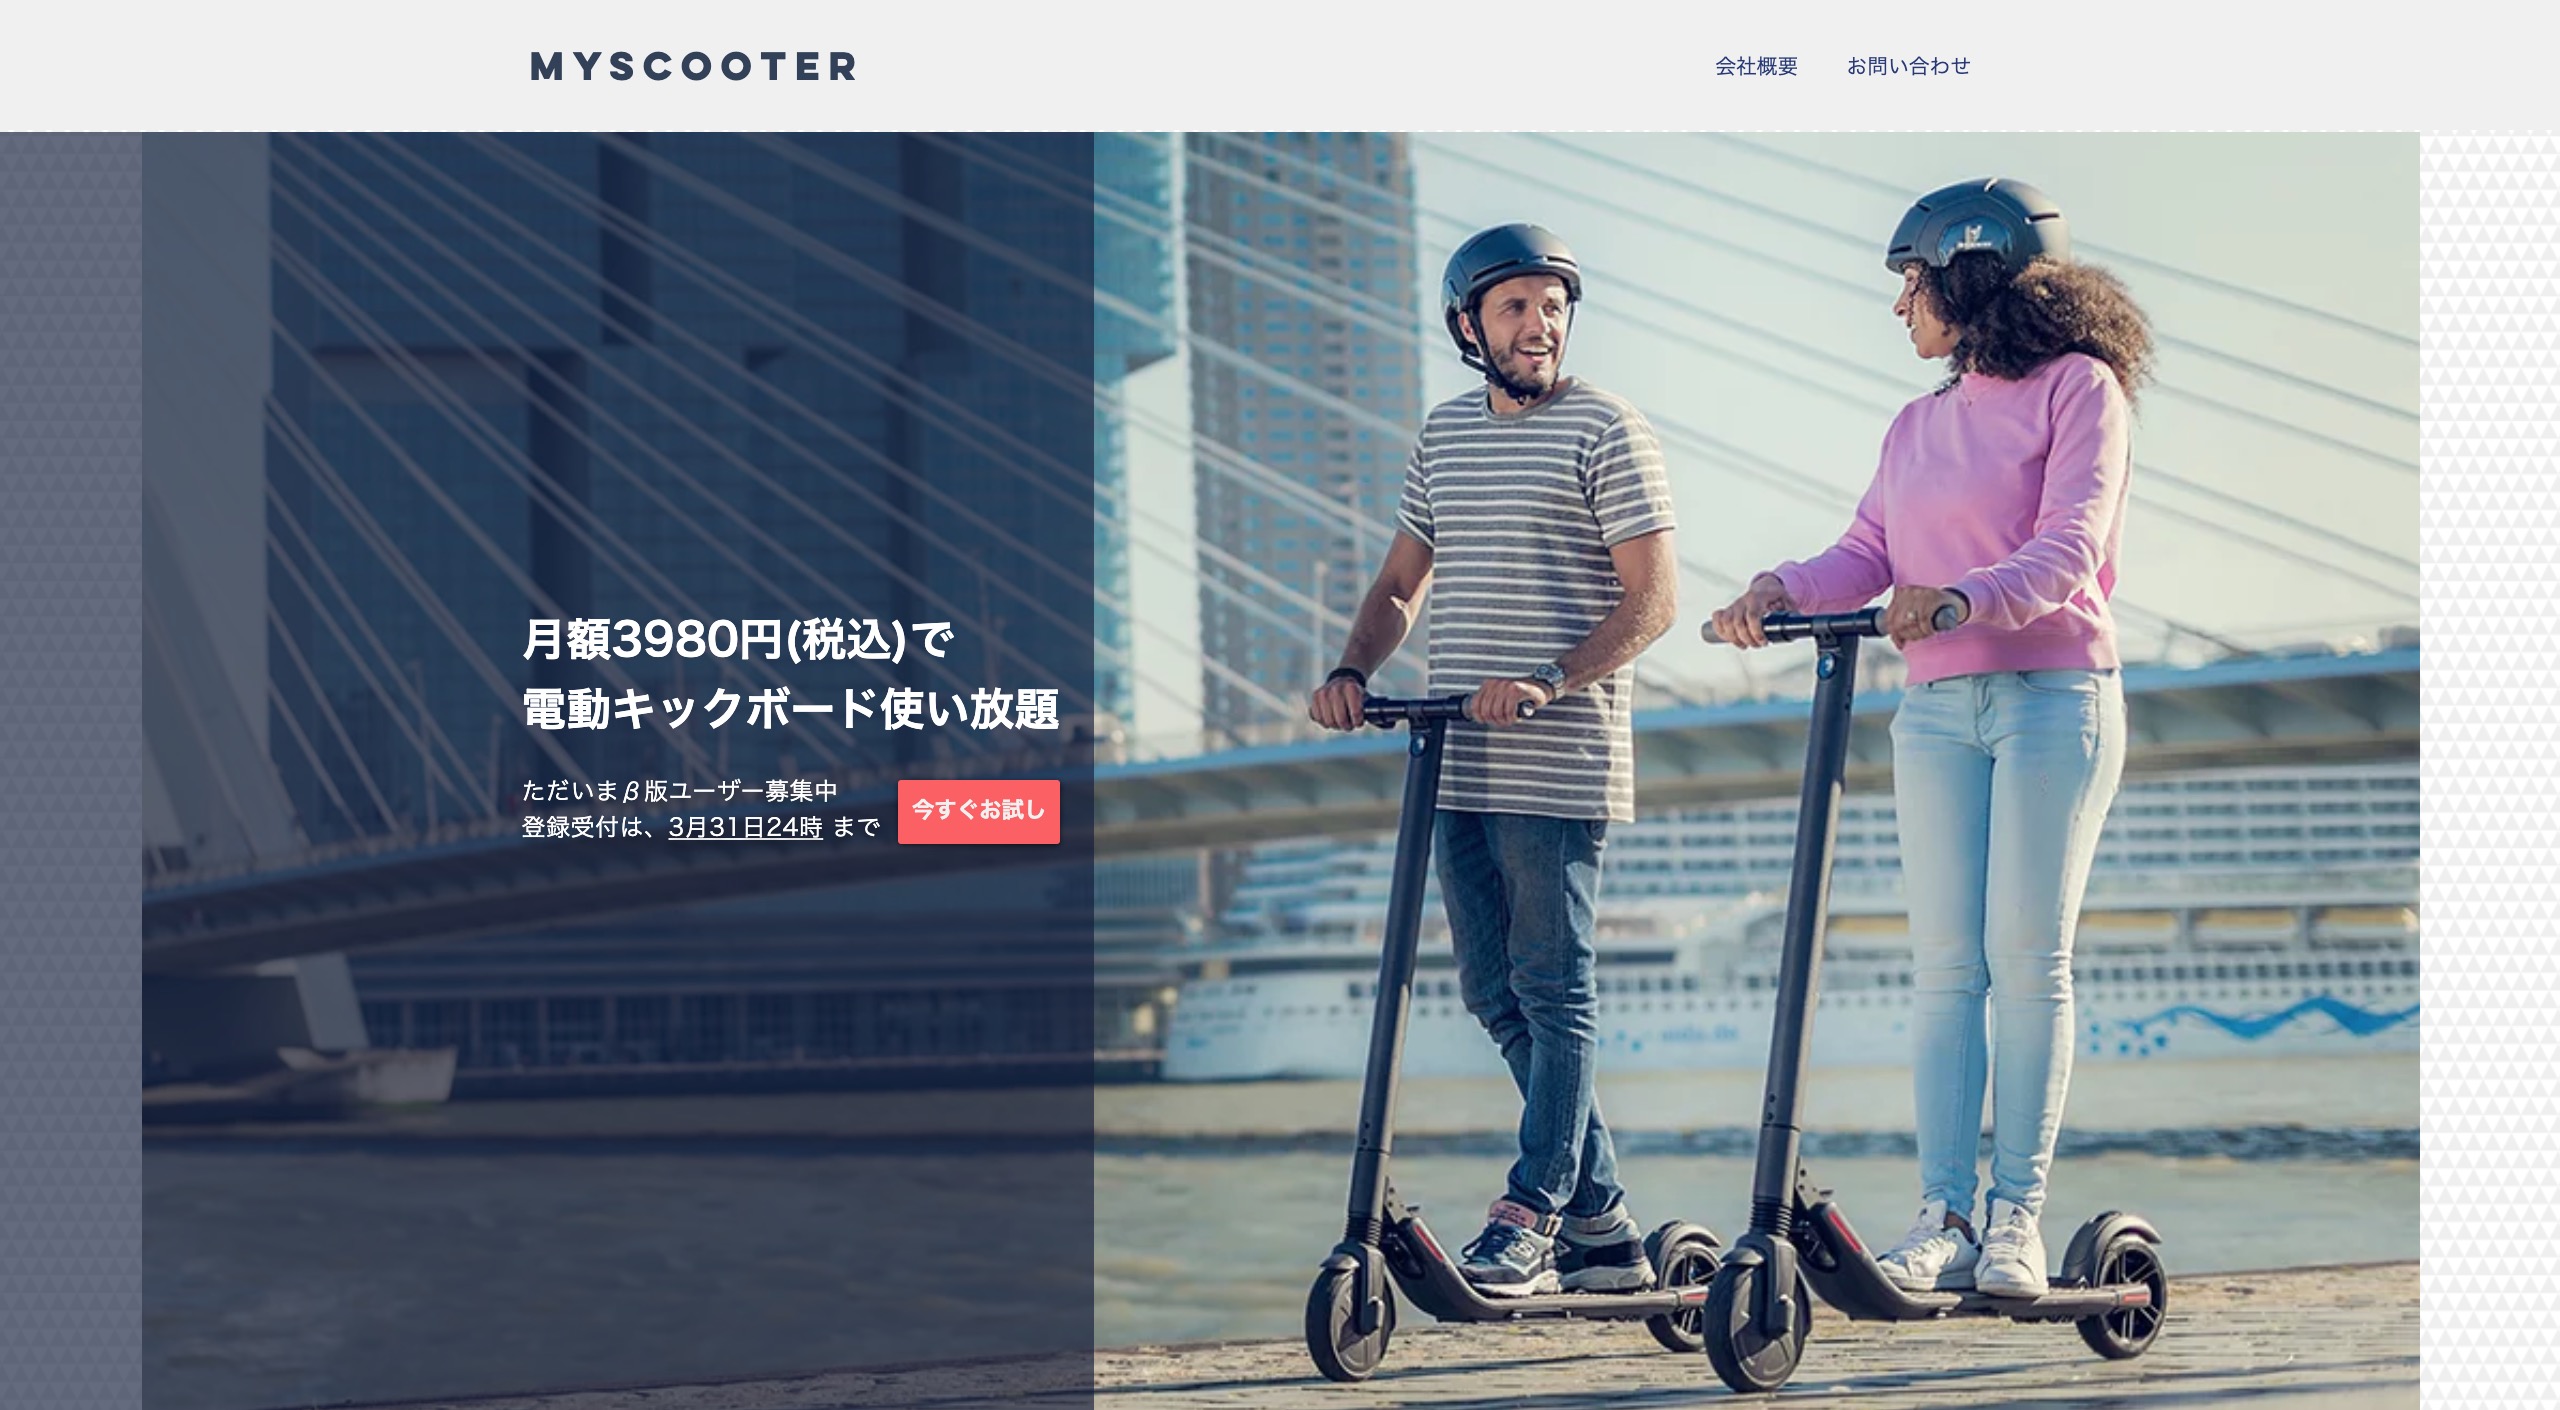 月額3980円で公道走行可能な電動キックボード乗り放題 Myscooter マイスクーター B版ユーザーの事前登録受付開始 株式会社gamuのプレスリリース